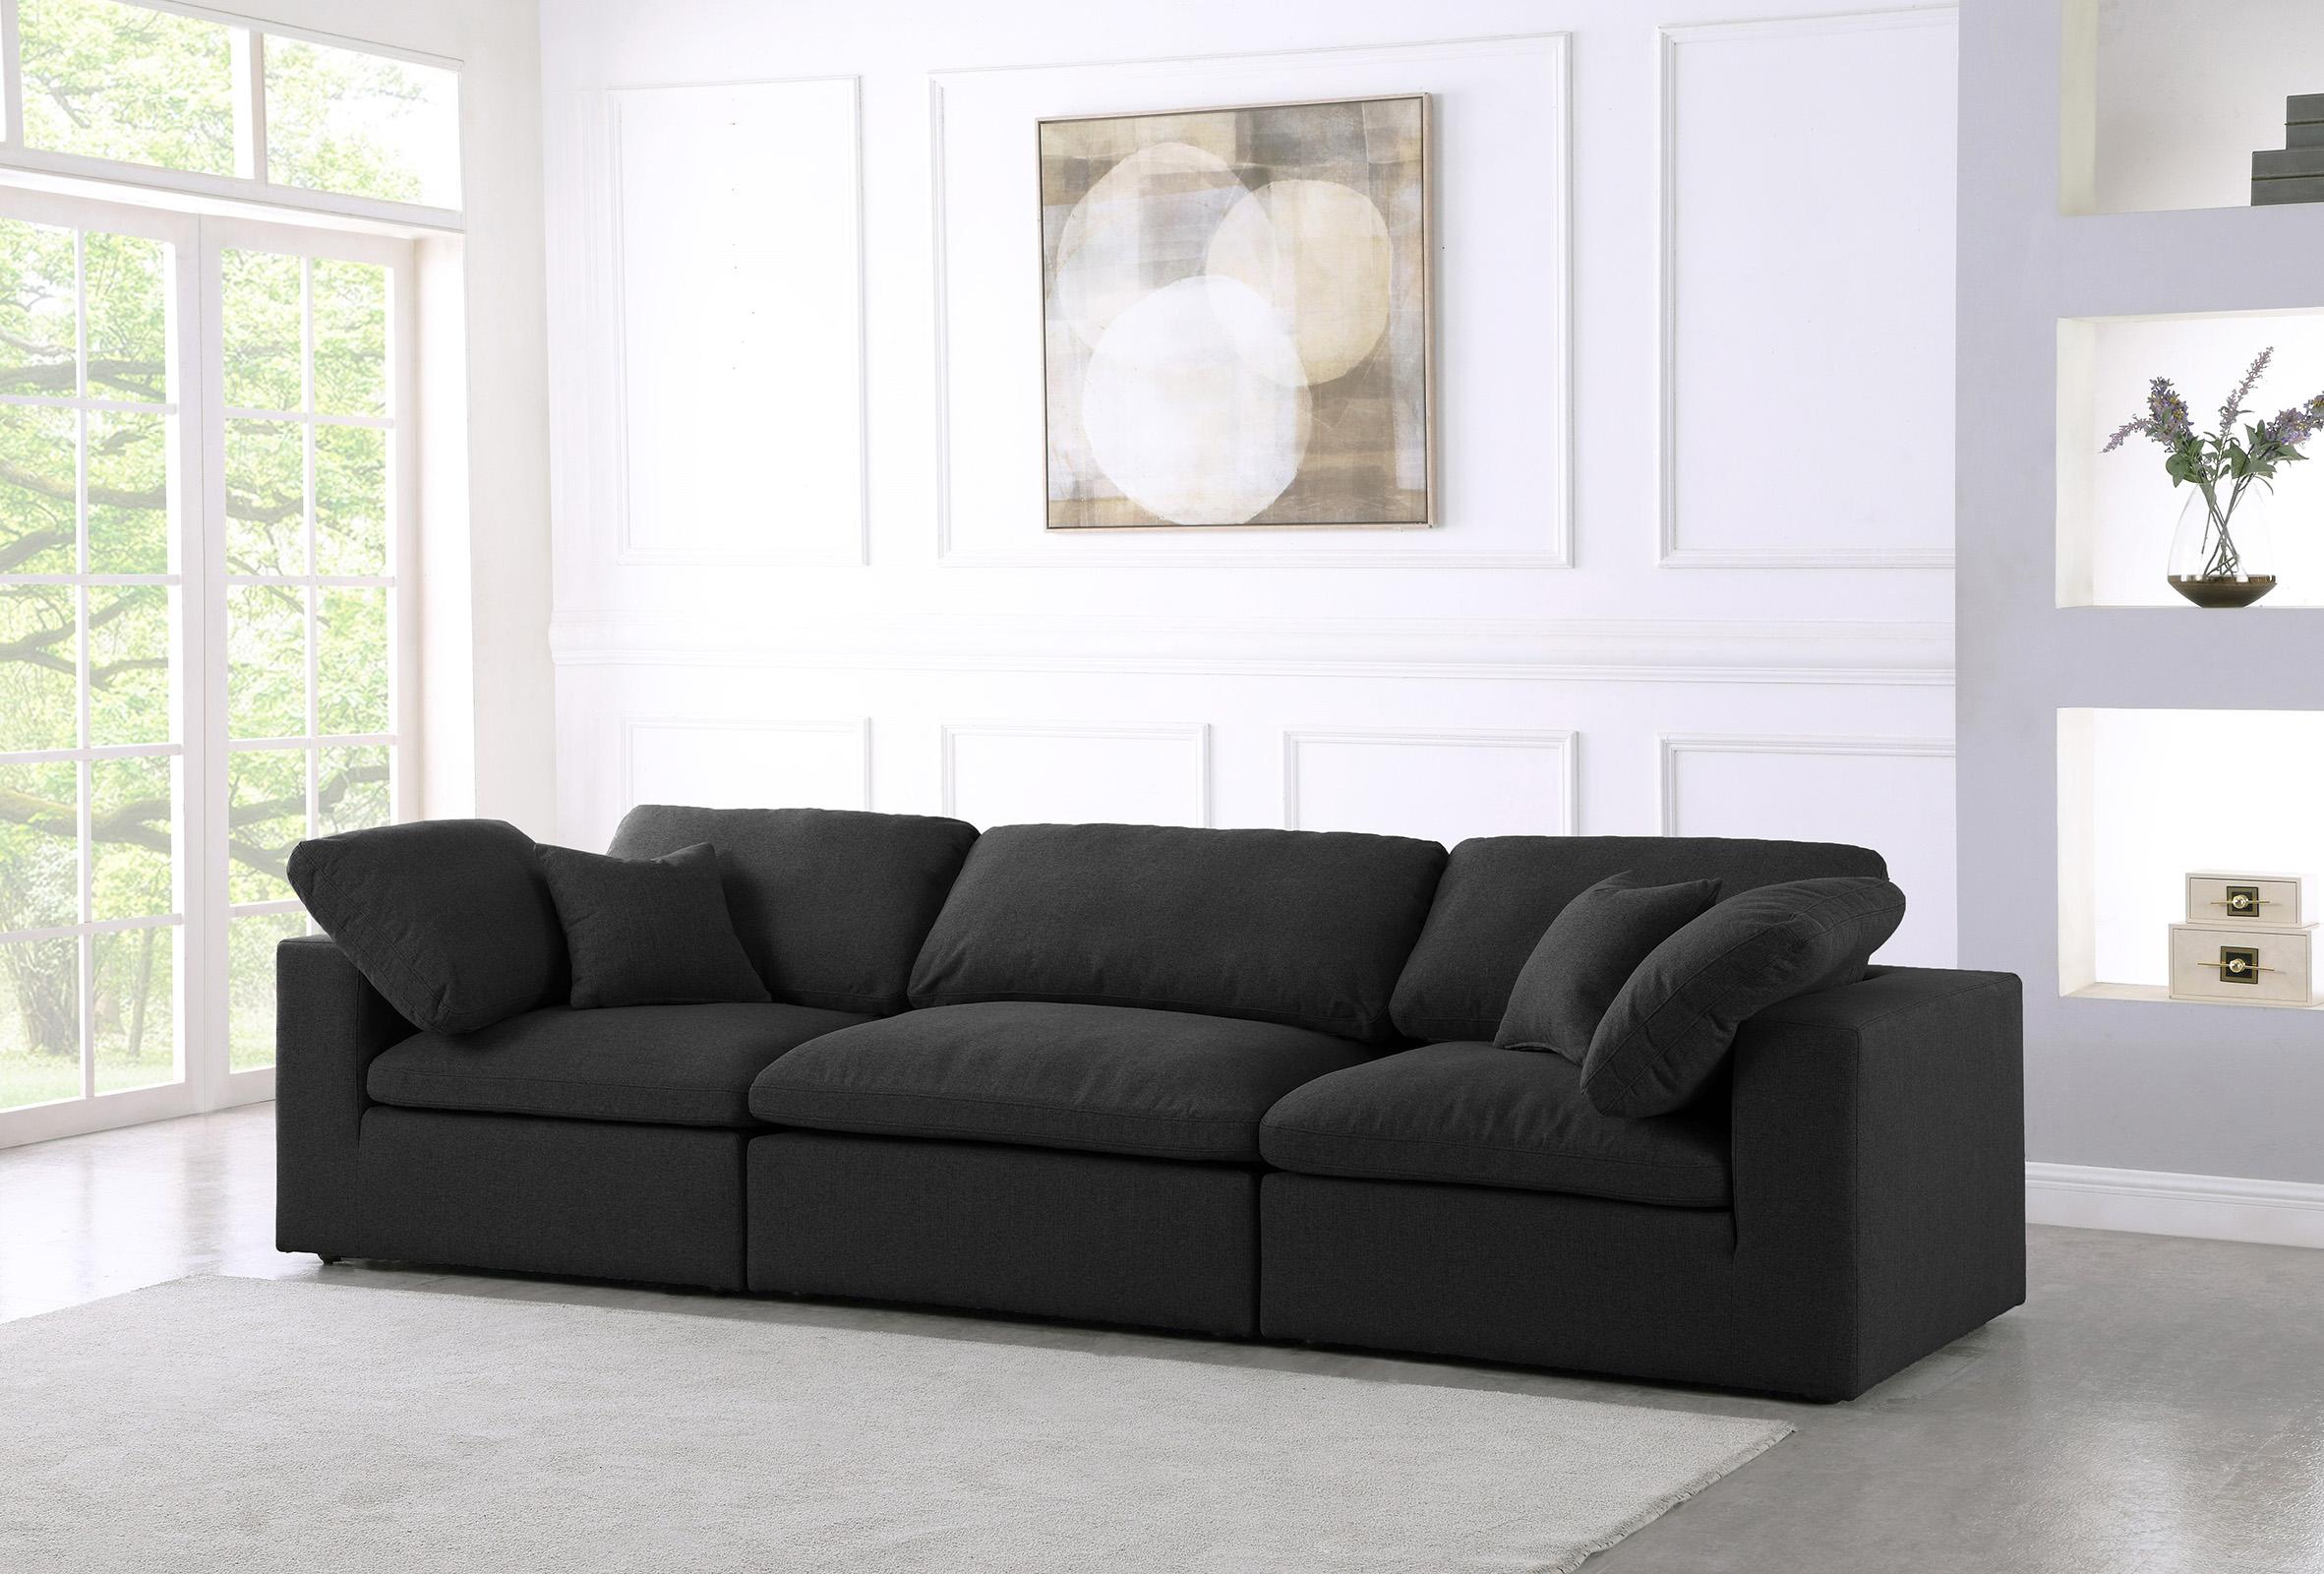 

    
Serene Black Linen Textured Fabric Deluxe Comfort Modular Sofa S119 Meridian
